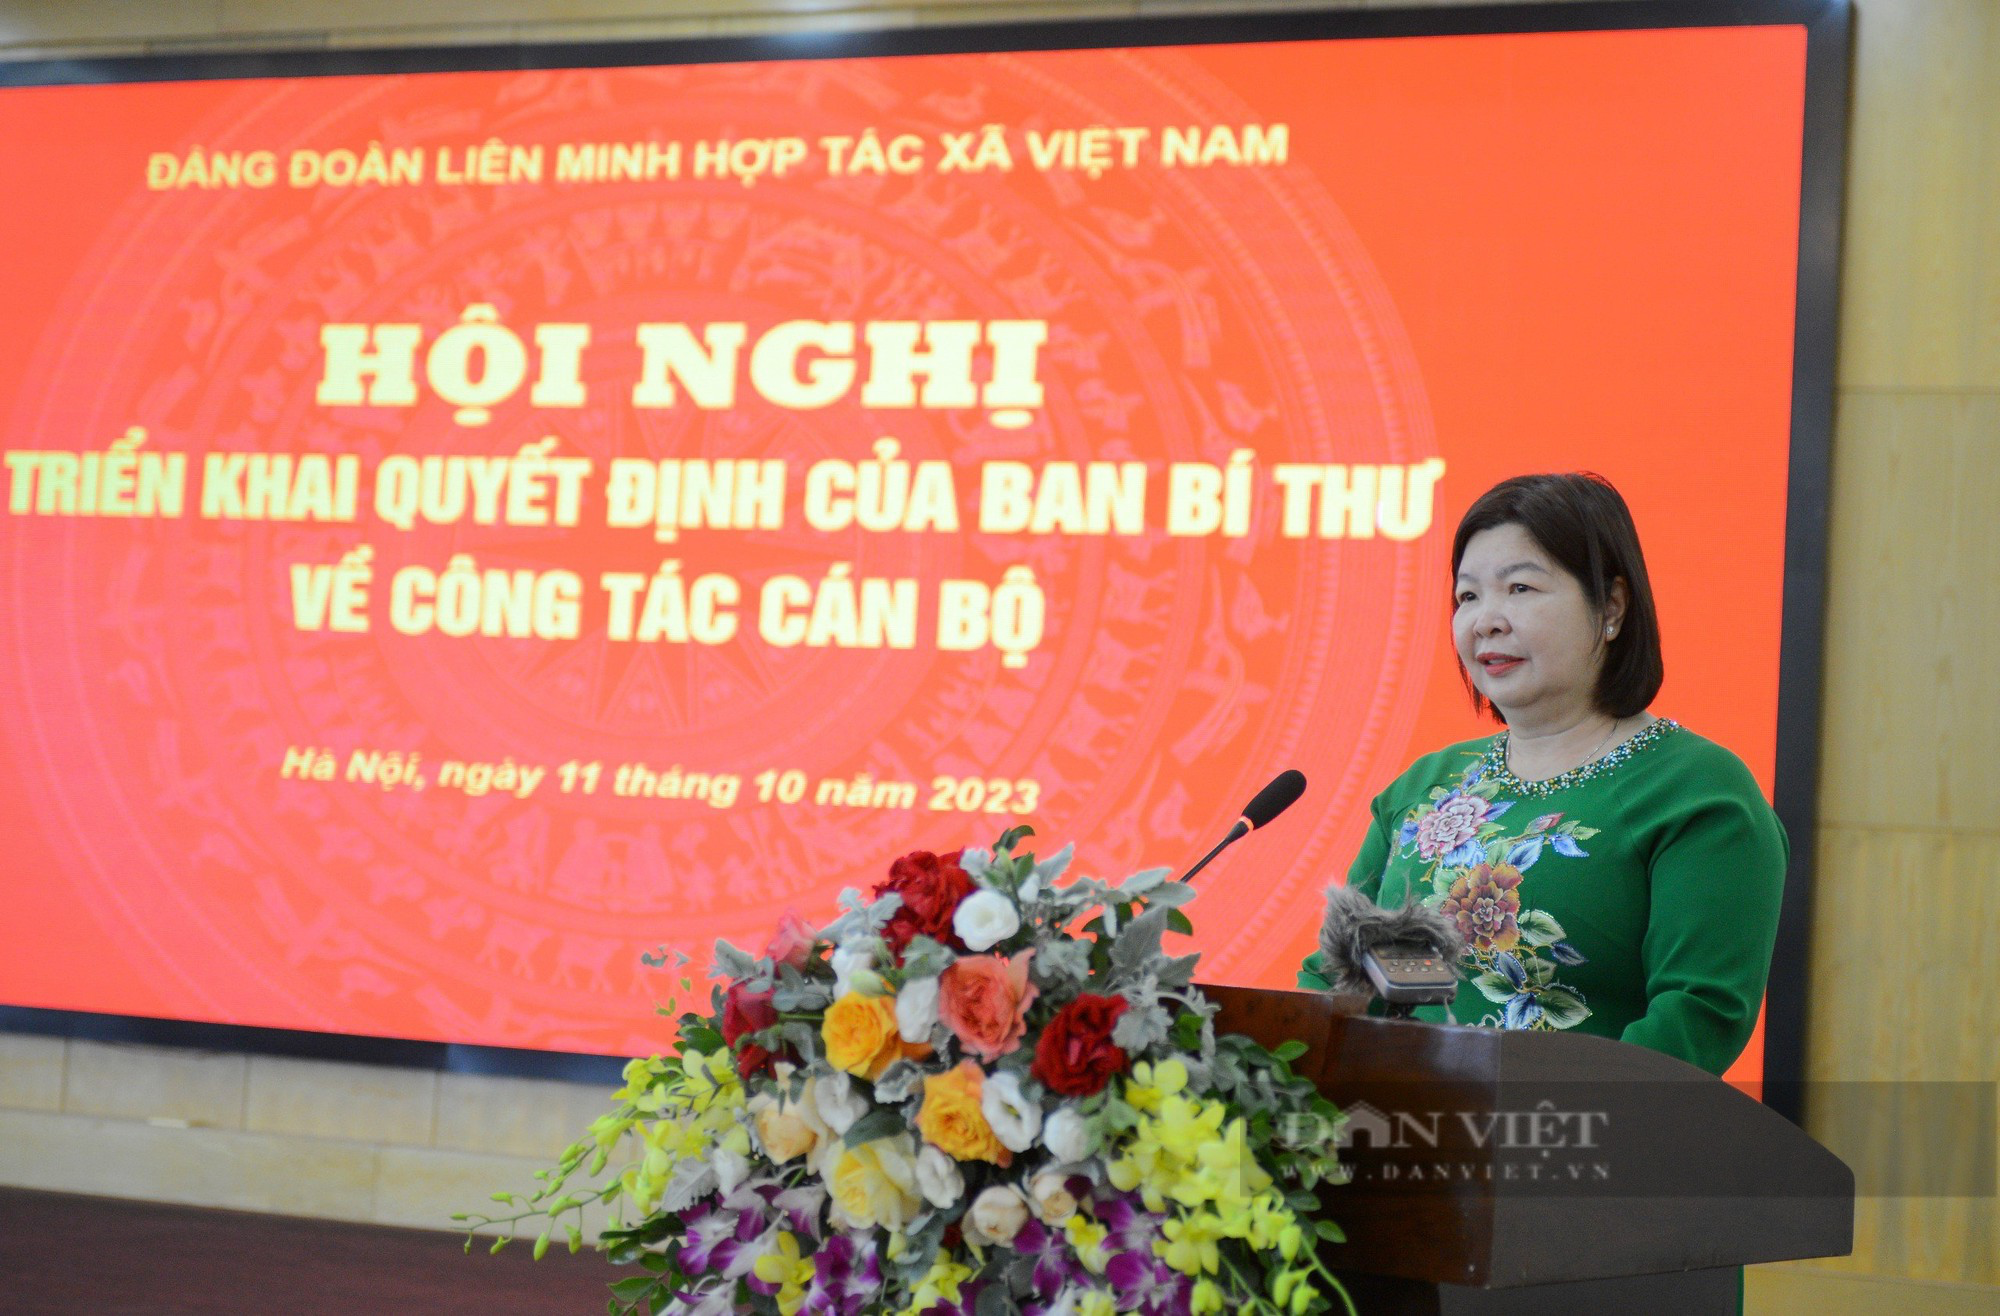 Phó Chủ tịch TW HND VN Cao Xuân Thu Vân được điều động giữ chức Bí thư Đảng đoàn Liên minh HTX Việt Nam - Ảnh 1.